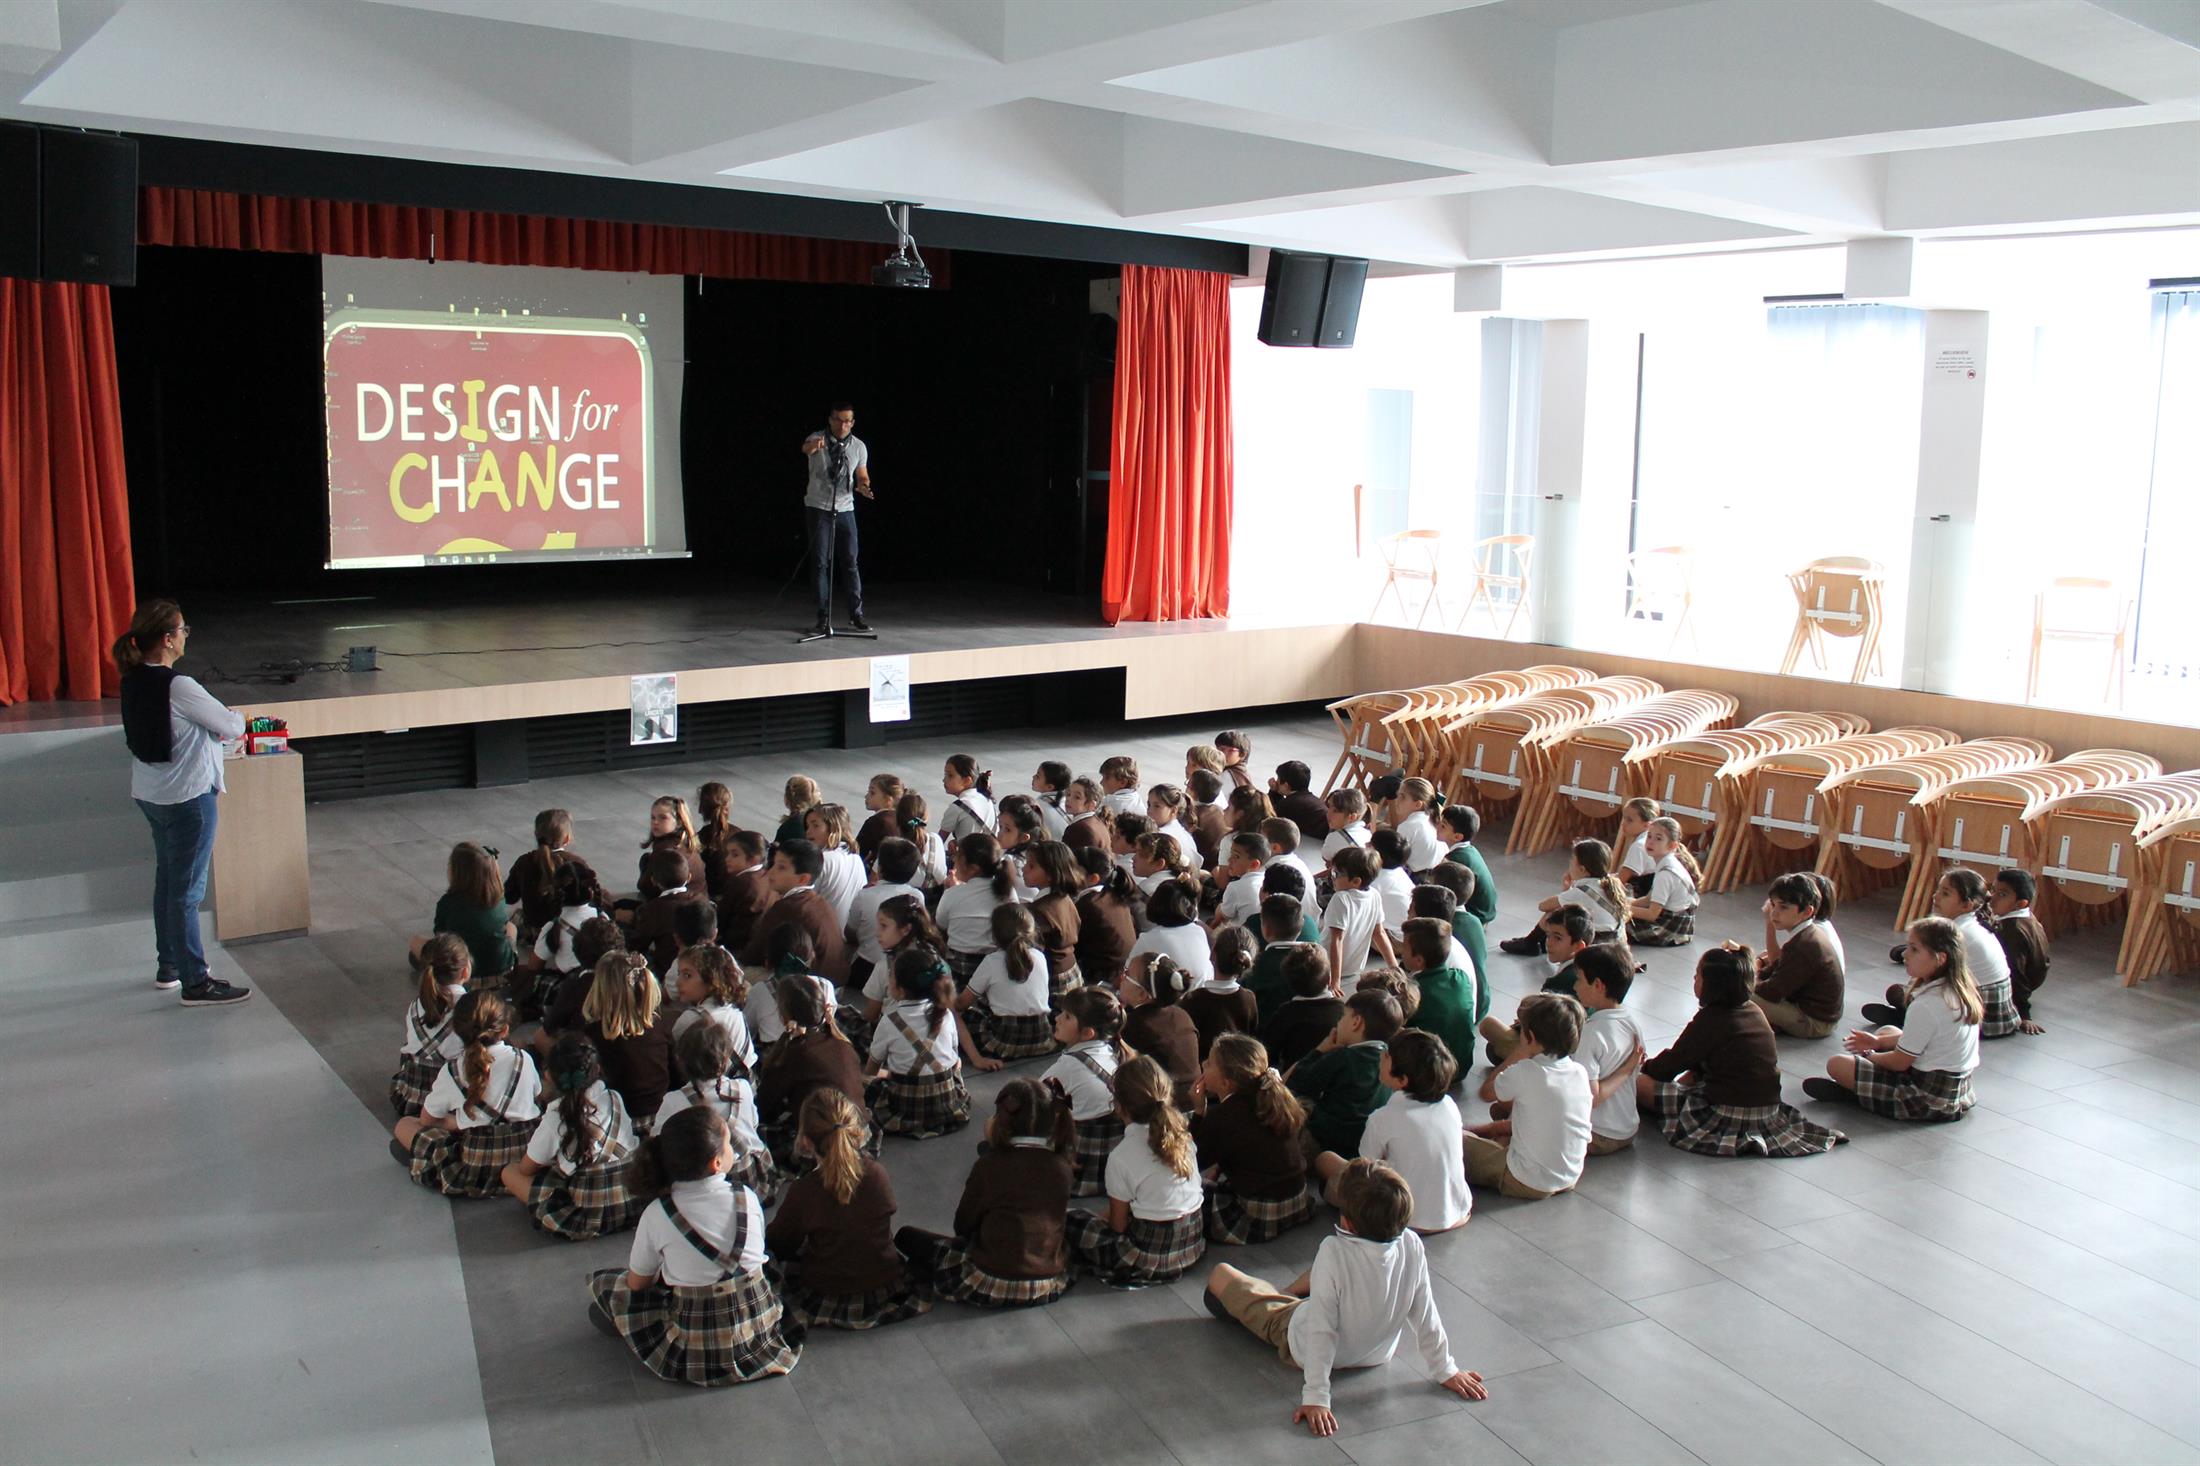 Foto de fundo de um salão, em que há crianças sentadas enfileiradas assistindo a um telão com o logo do Design For Change.